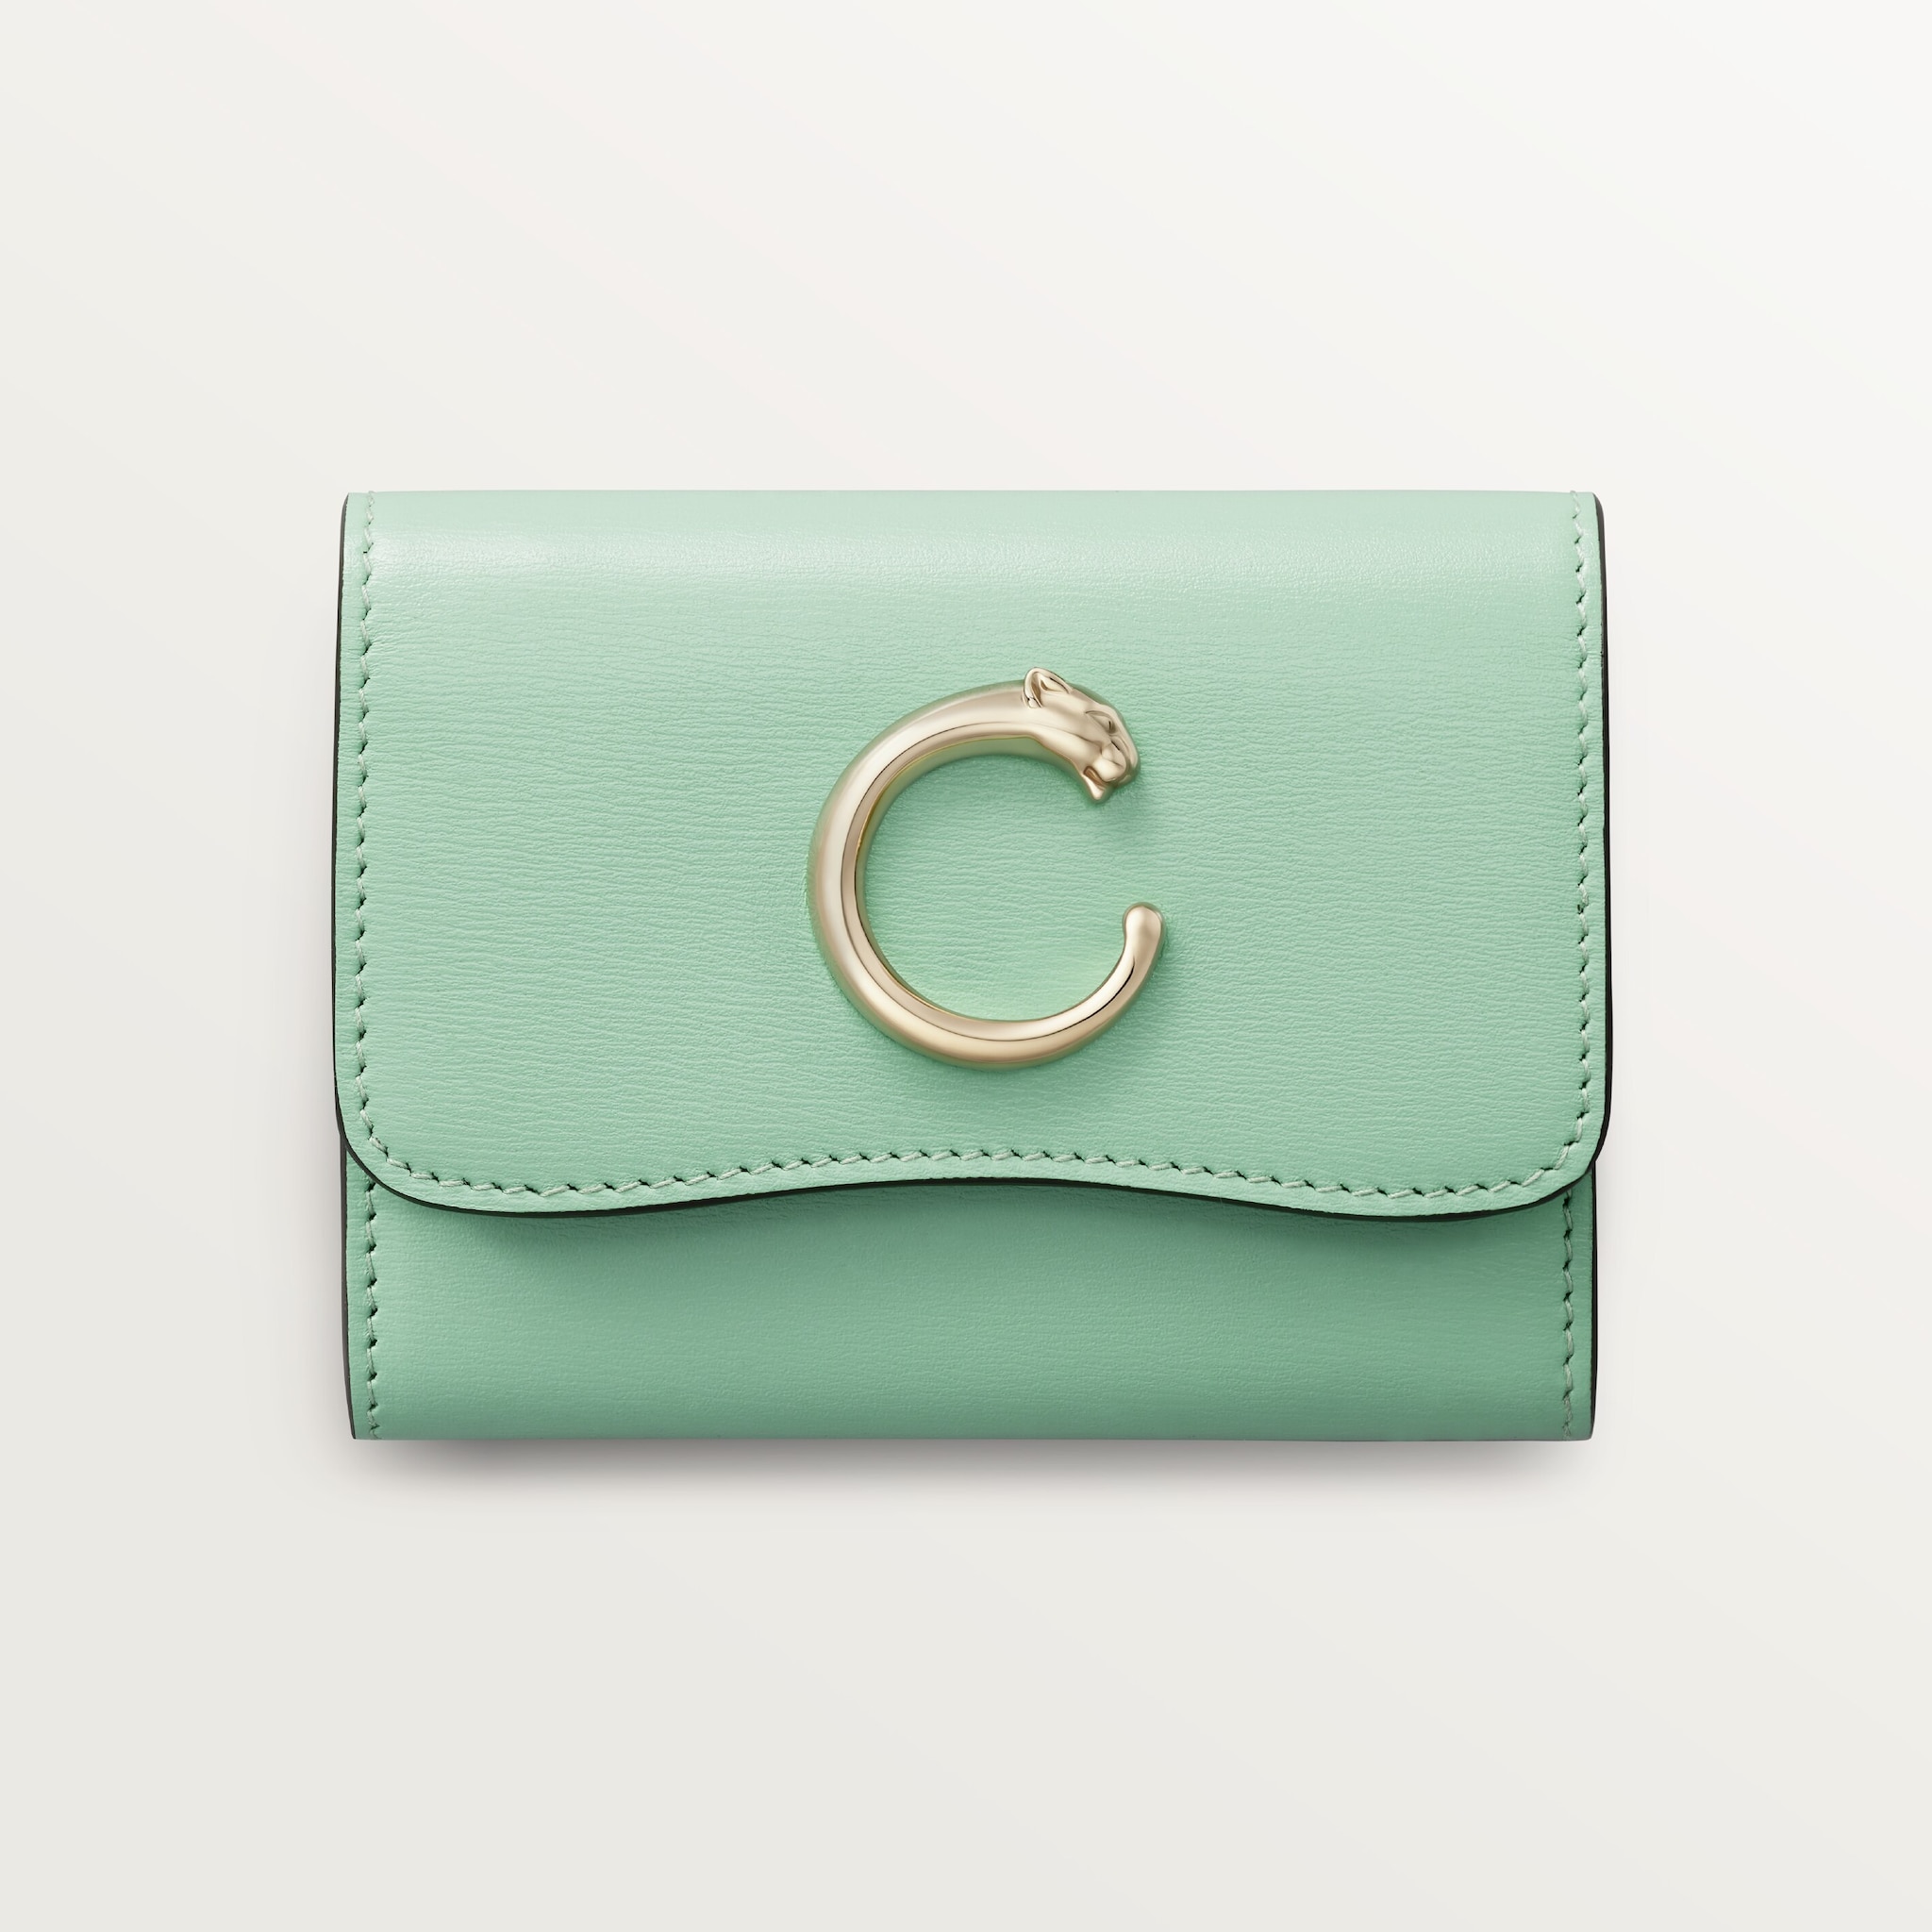 Mini wallet, Panthère de CartierSage green calfskin, golden finish